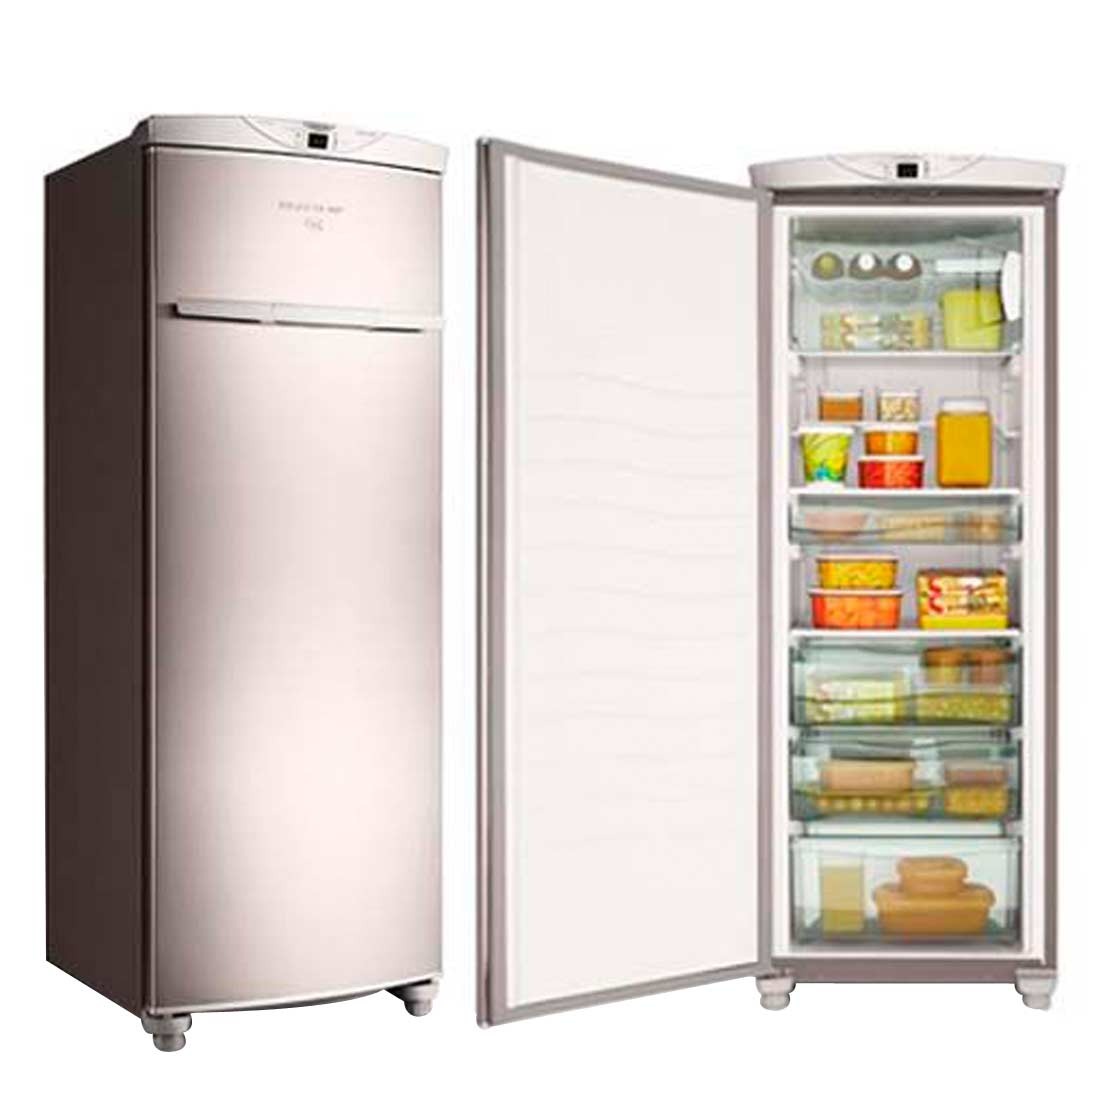 Freezer Vertical: Solusi Praktis untuk Menyimpan Makanan dalam Jumlah Banyak